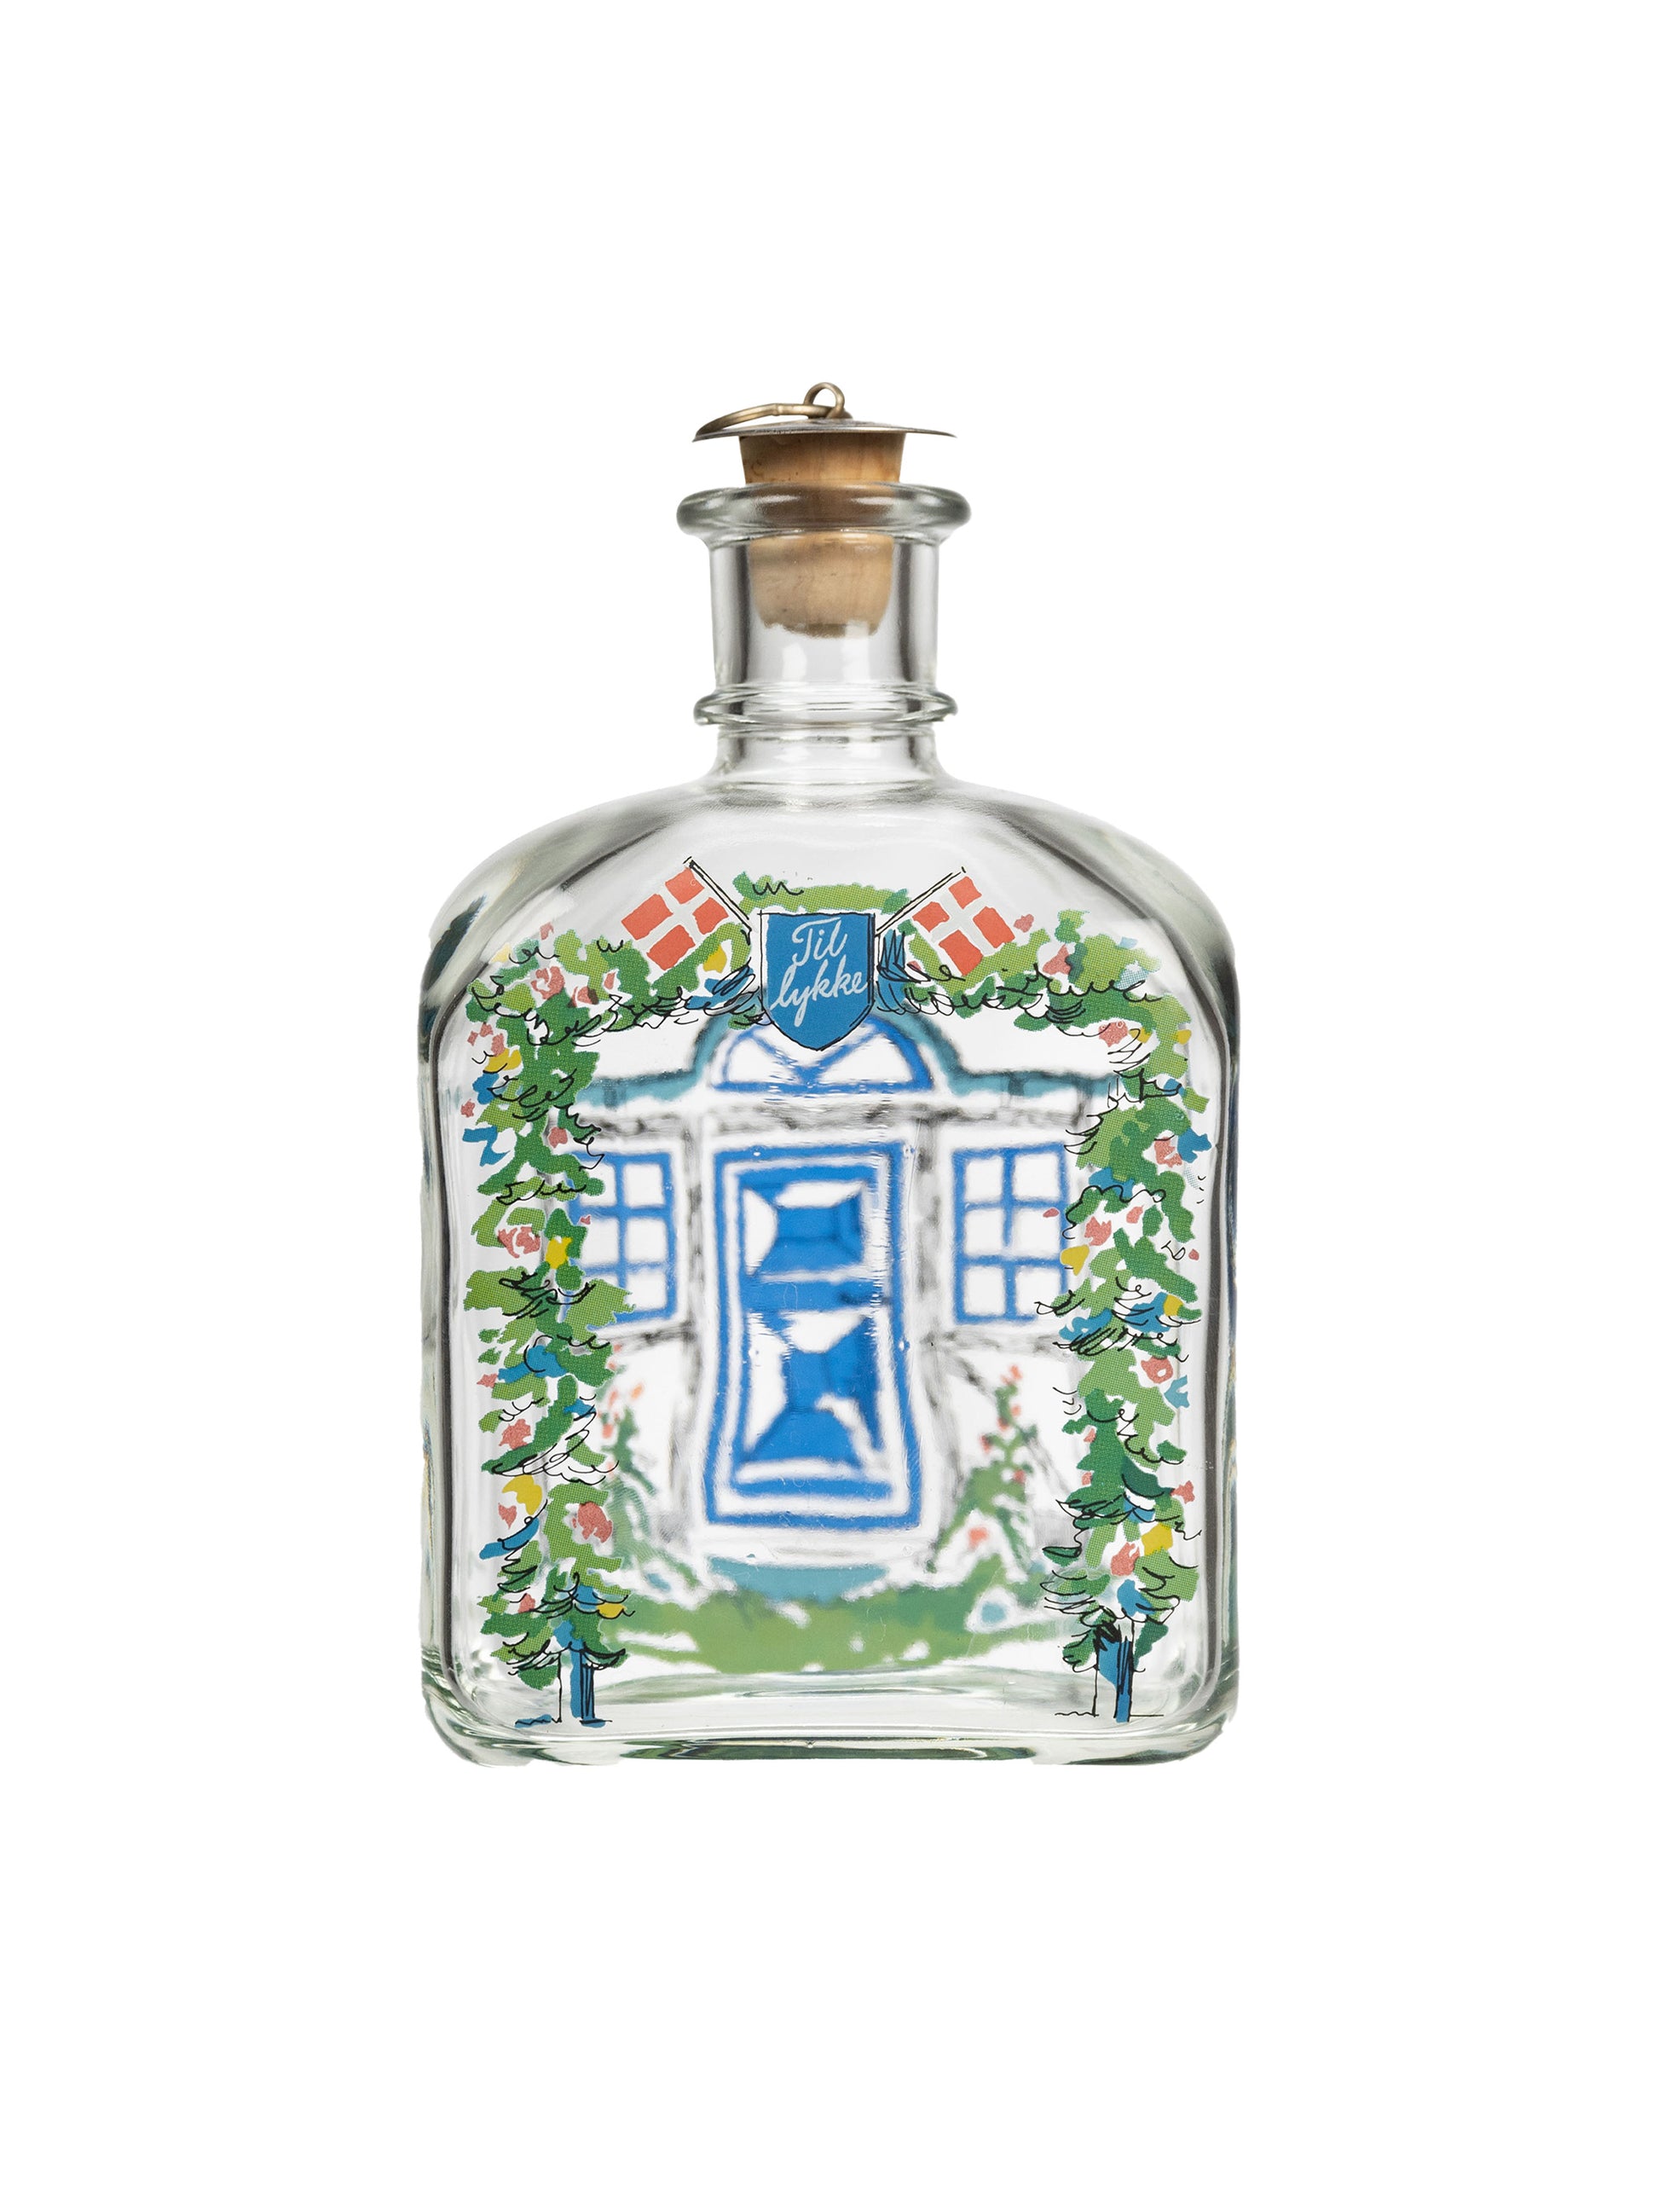 https://westontable.com/cdn/shop/files/Vintage-Holmegaard-Danish-Celebration-Glass-Bottle-Weston-Table-SP.jpg?v=1695905166&width=1946